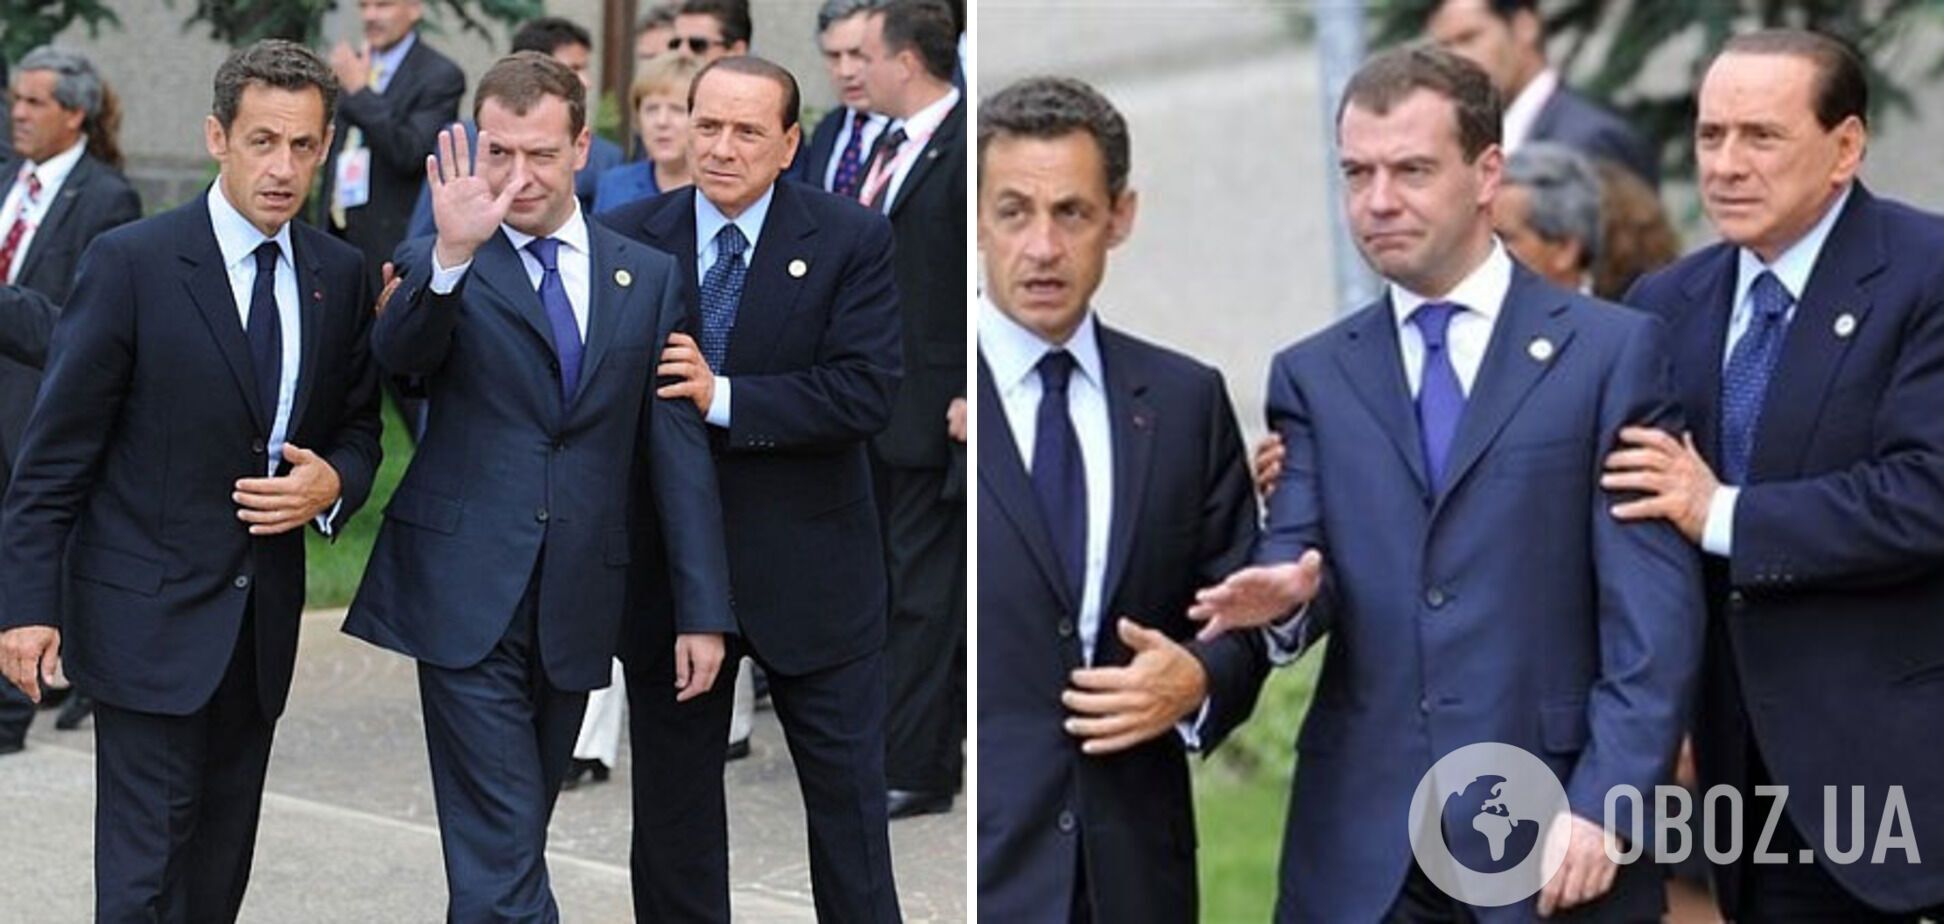 Медведев напился на саммите G8 и передвигался с помощью Саркози и Берлускони.